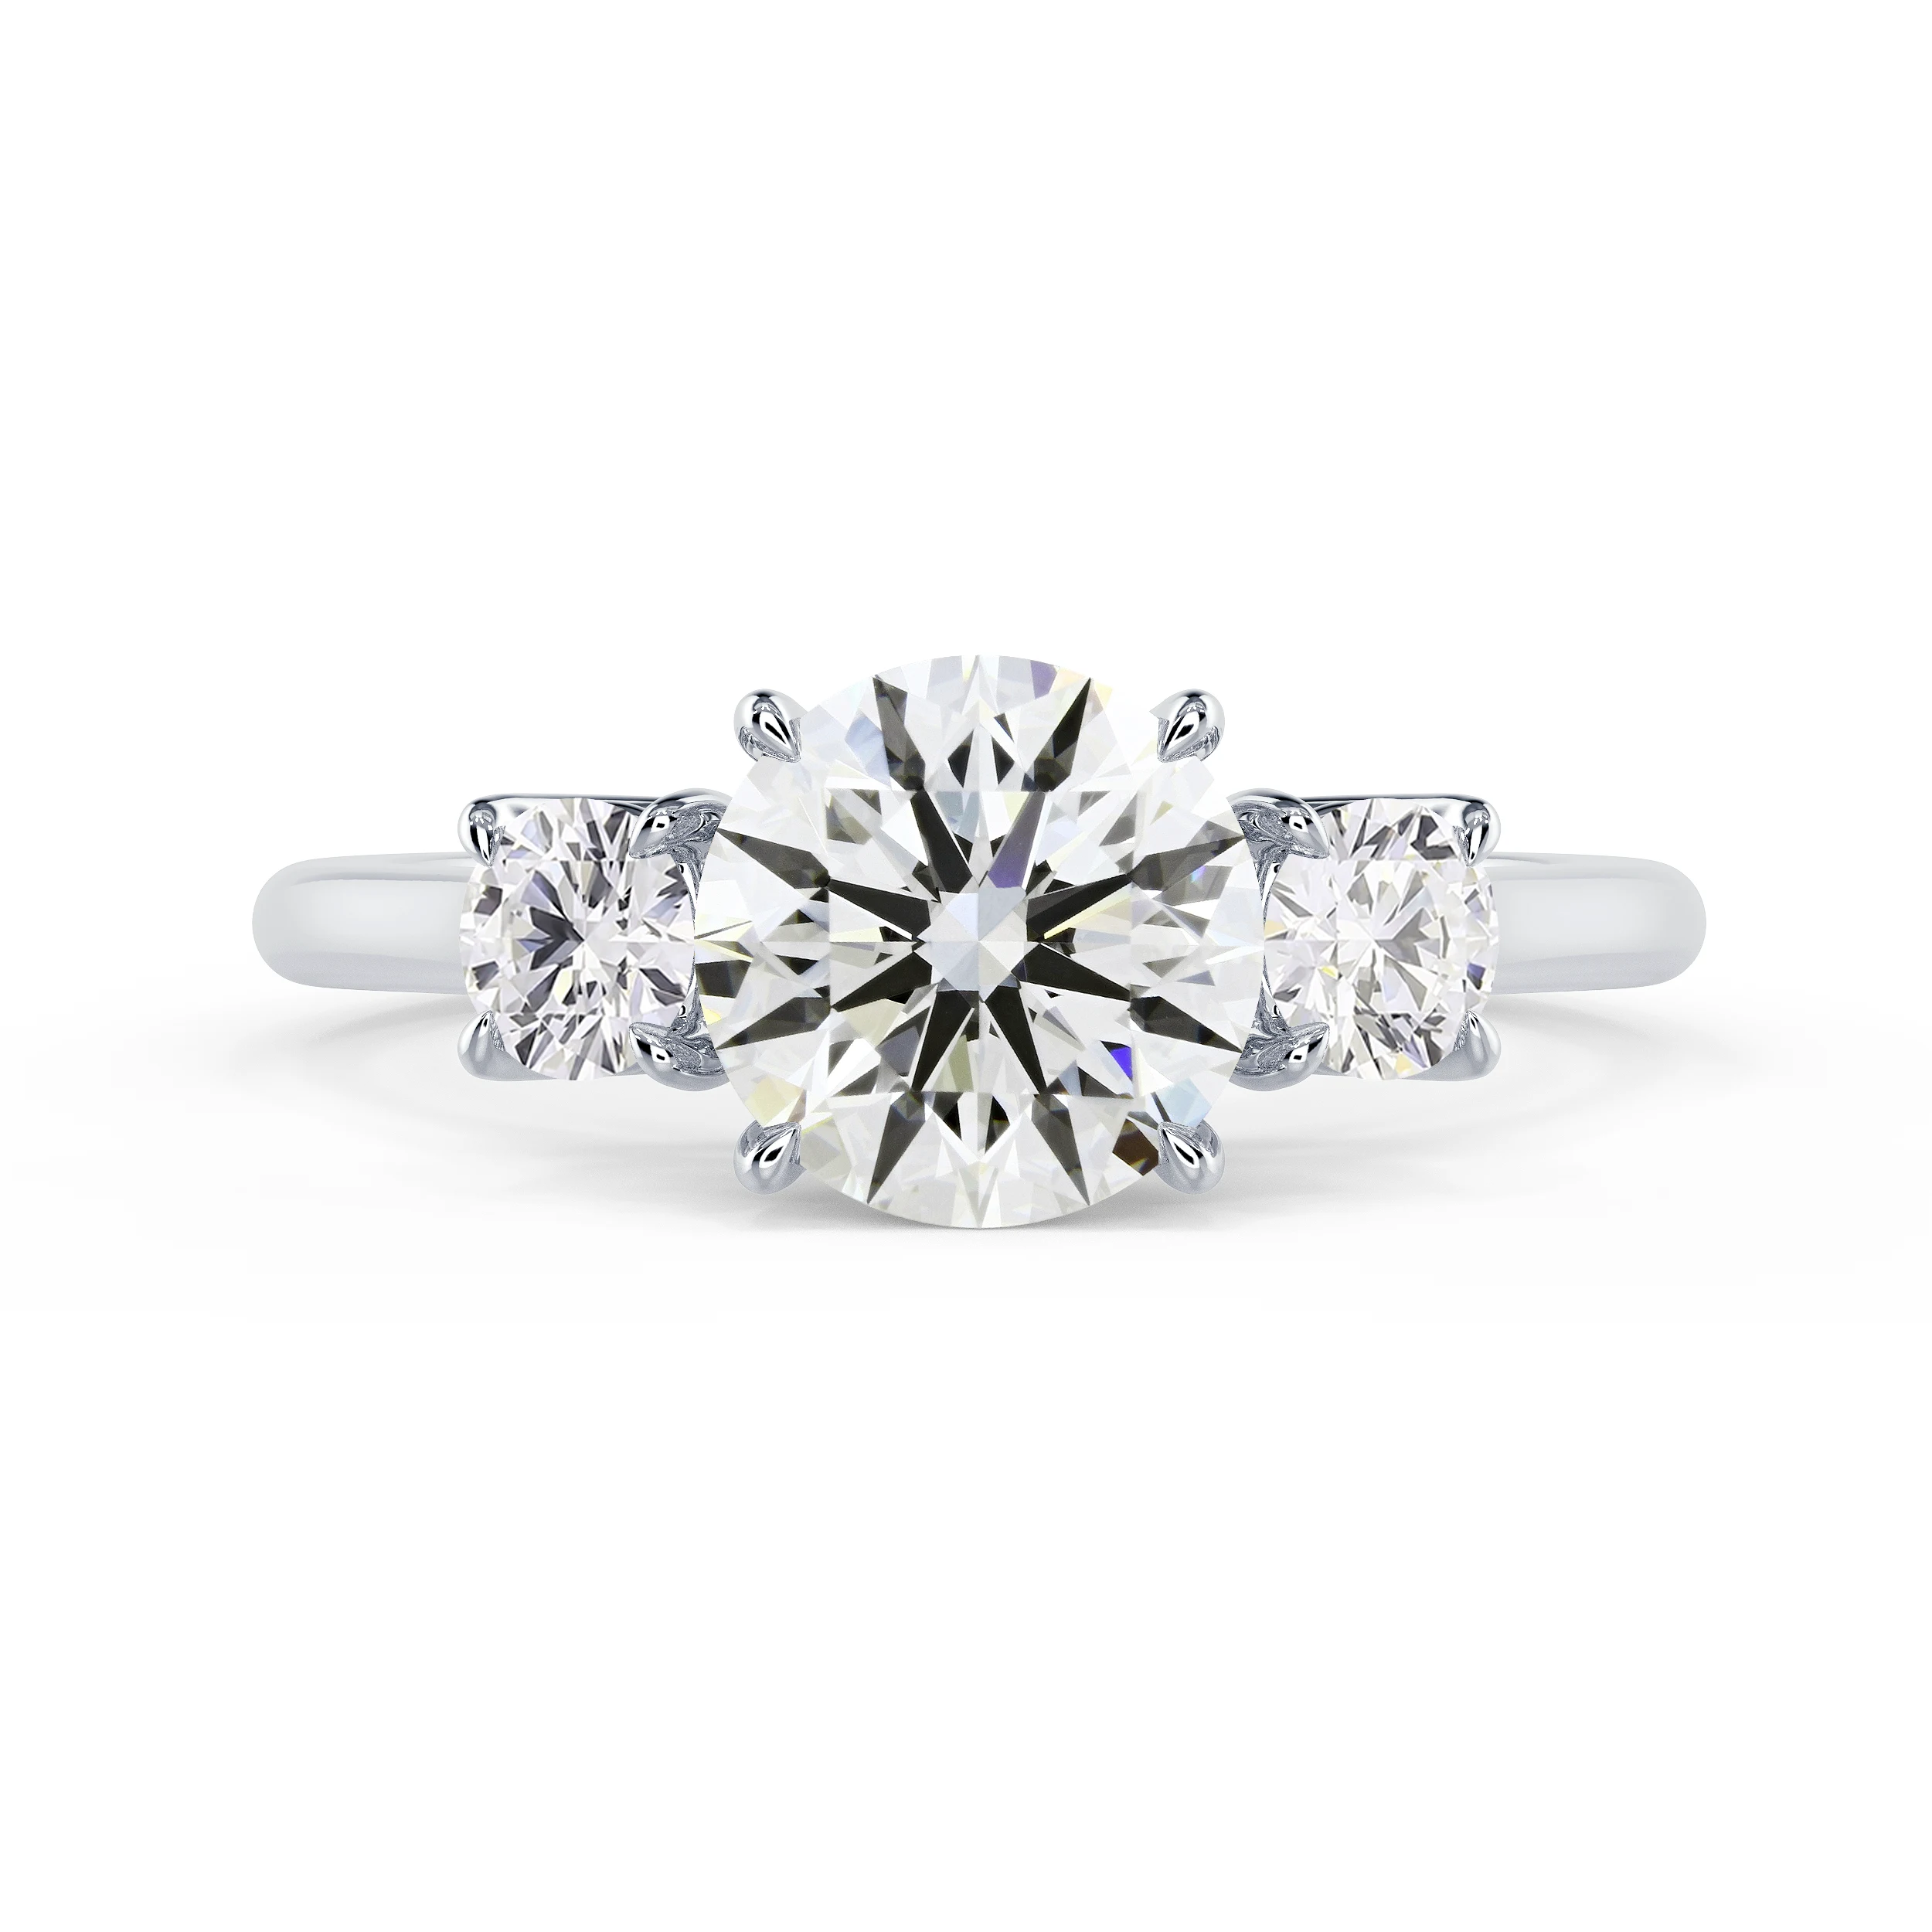 Lab Diamonds set in White Gold Round Three Stone Diamond Engagement Ring (Main View)